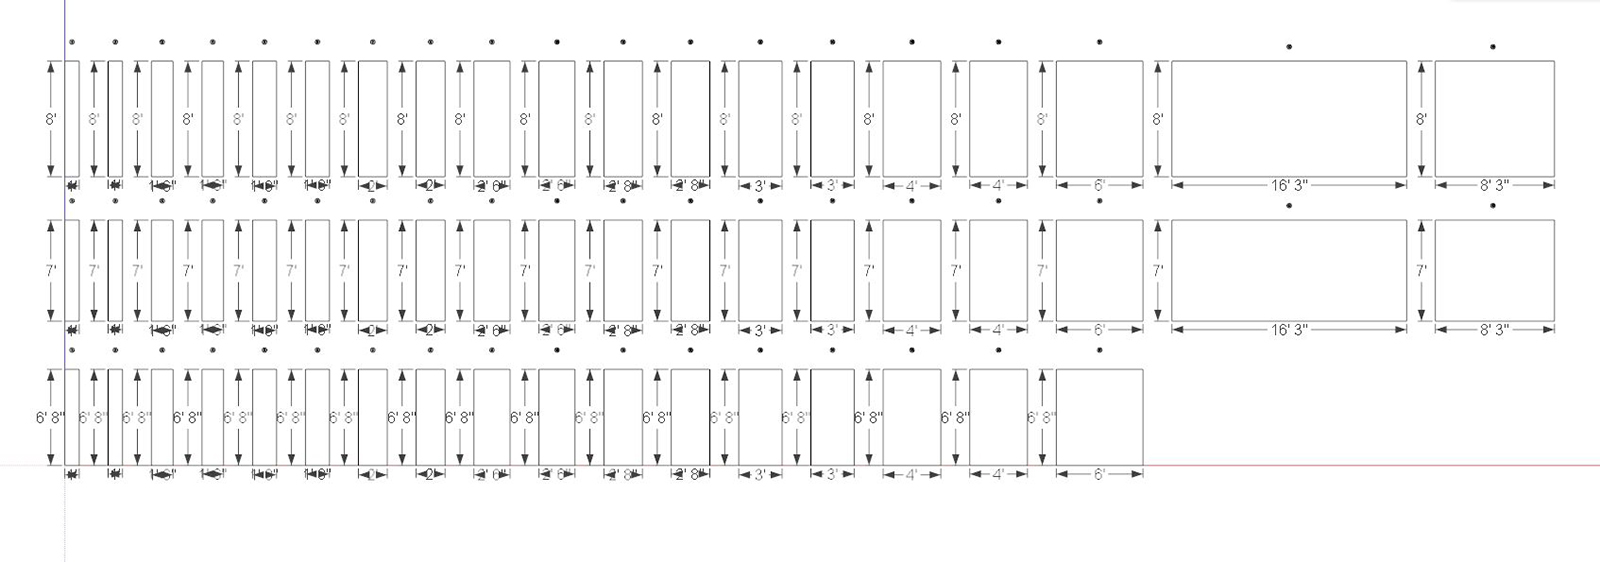 Door-Schedule-Component-001.JPG